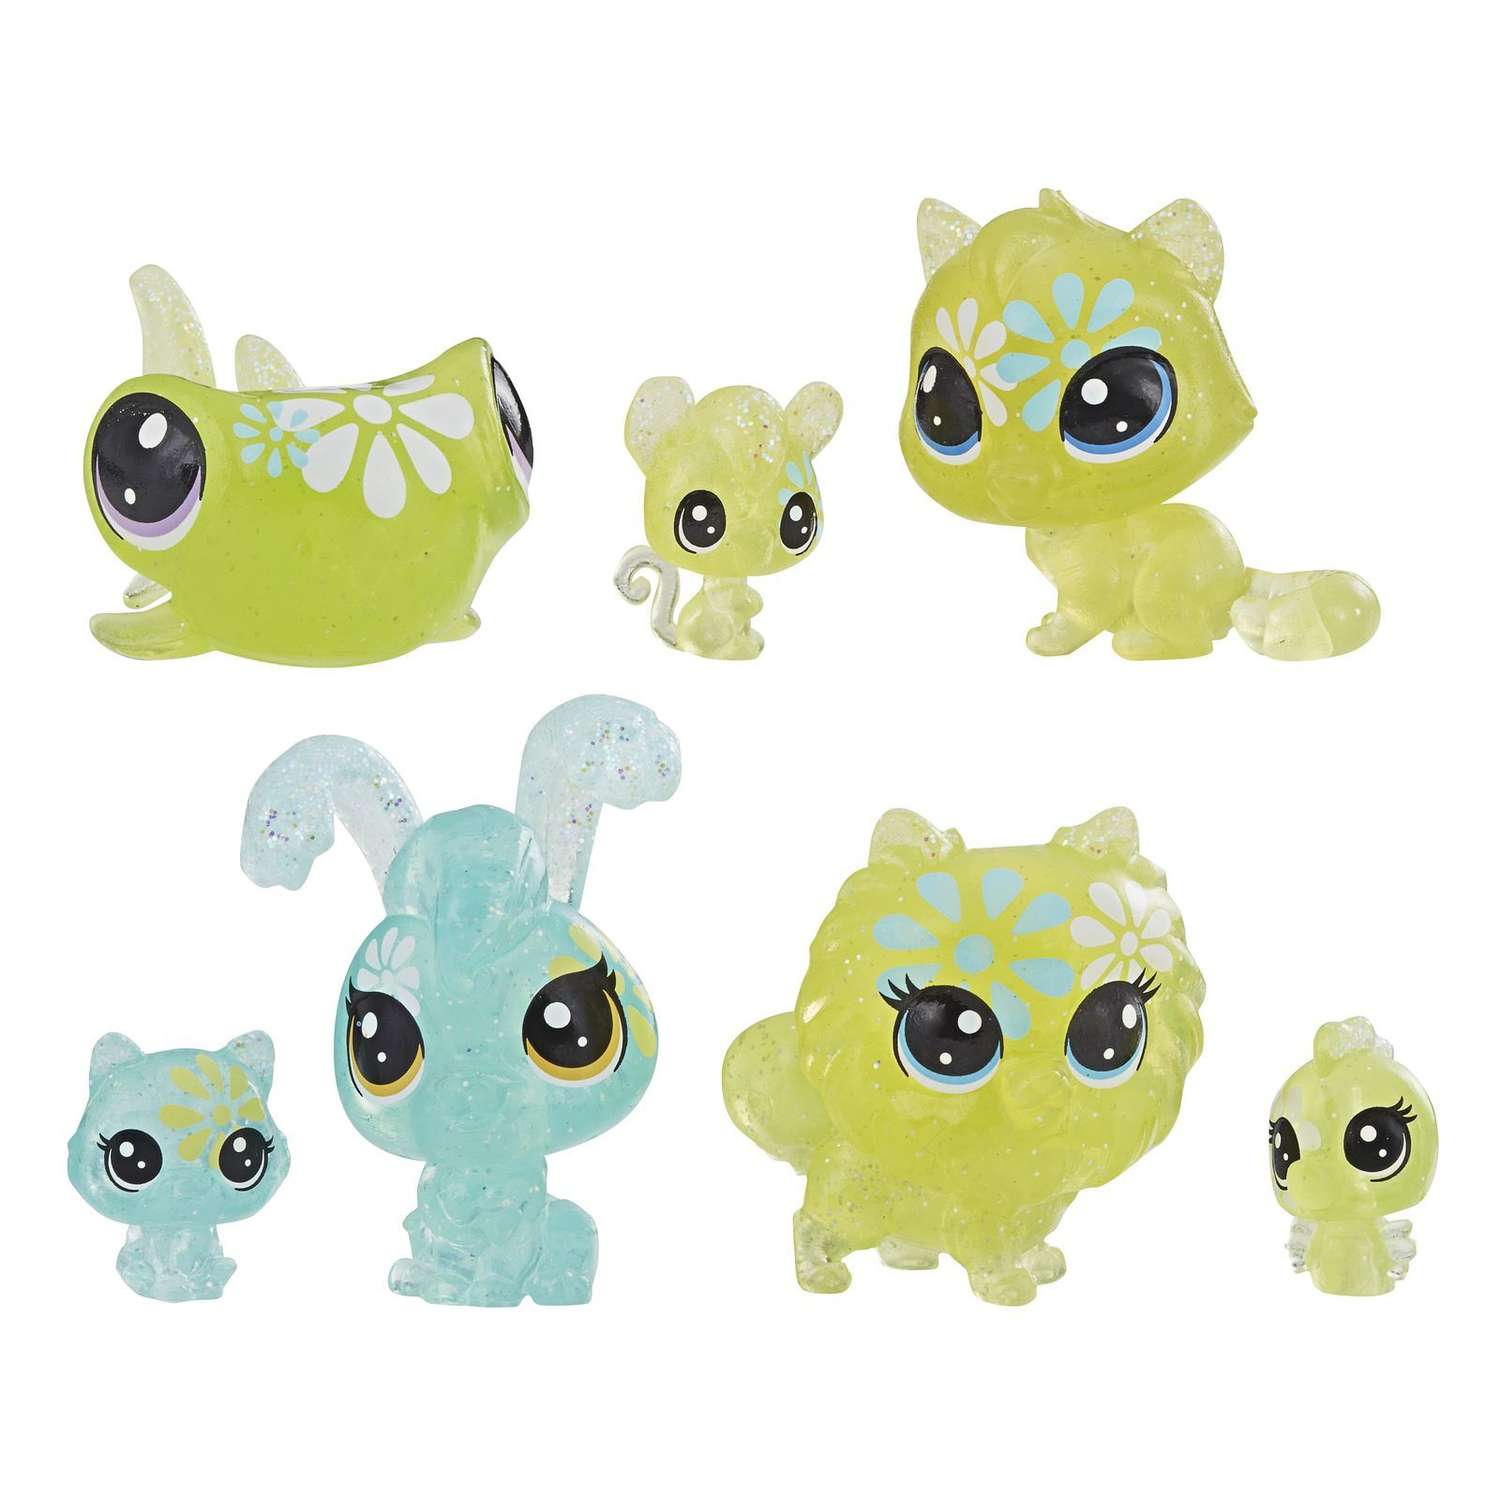 Набор игровой Littlest Pet Shop 7 цветочных петов Дейзи E5165EU4 - фото 1